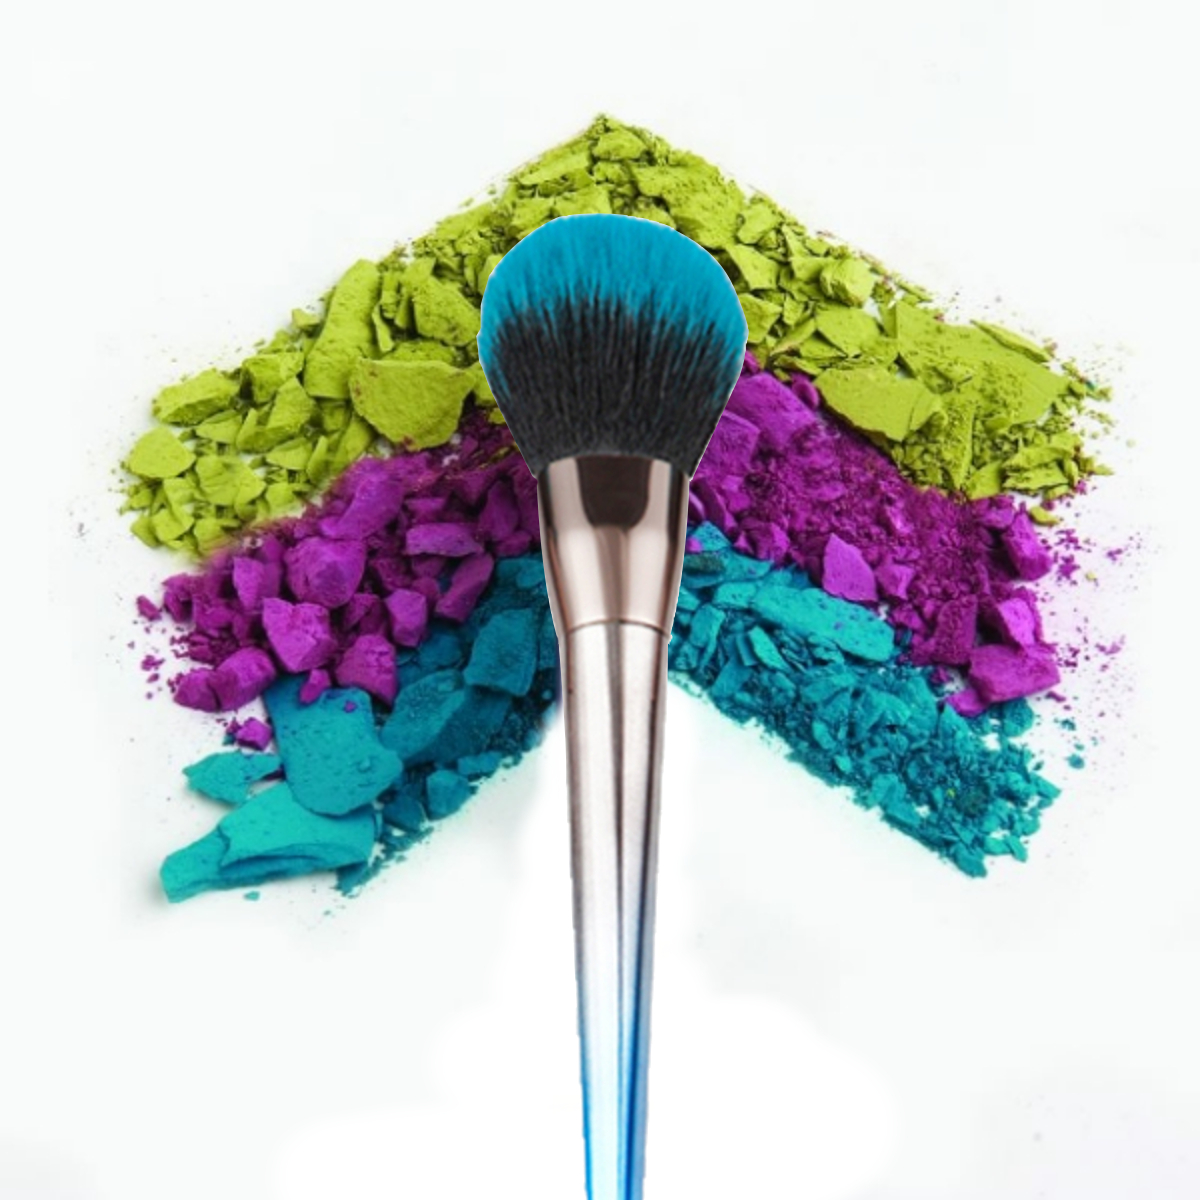 7Pcs Makeup Brushes Set